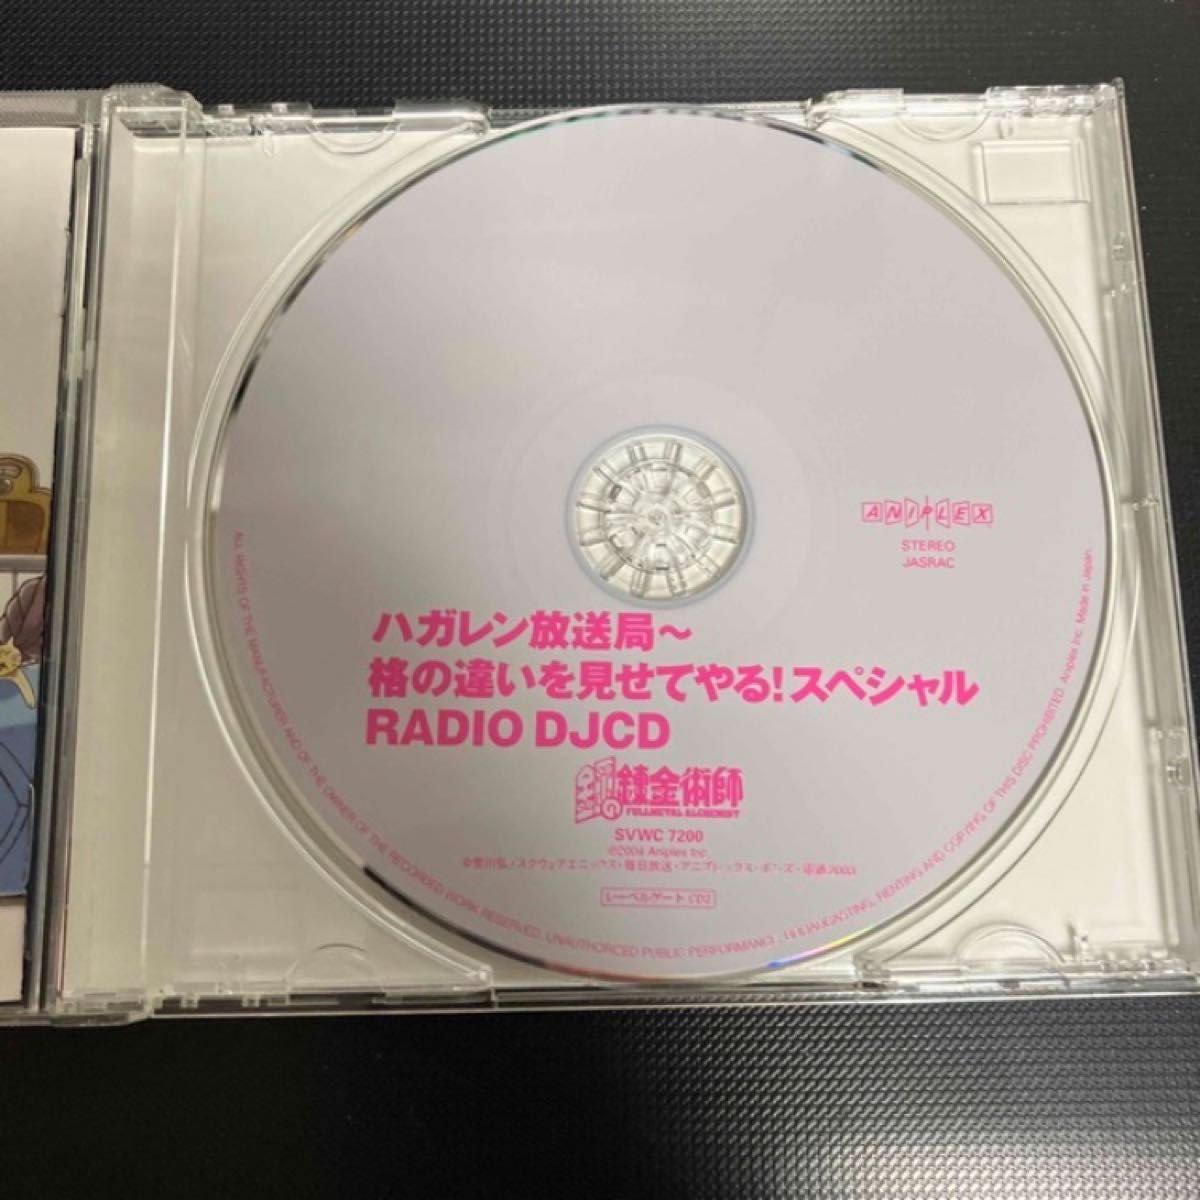 ★ ラジオDJCD「ハガレン放送局」格の違いを見せてやるスペシャル! CD